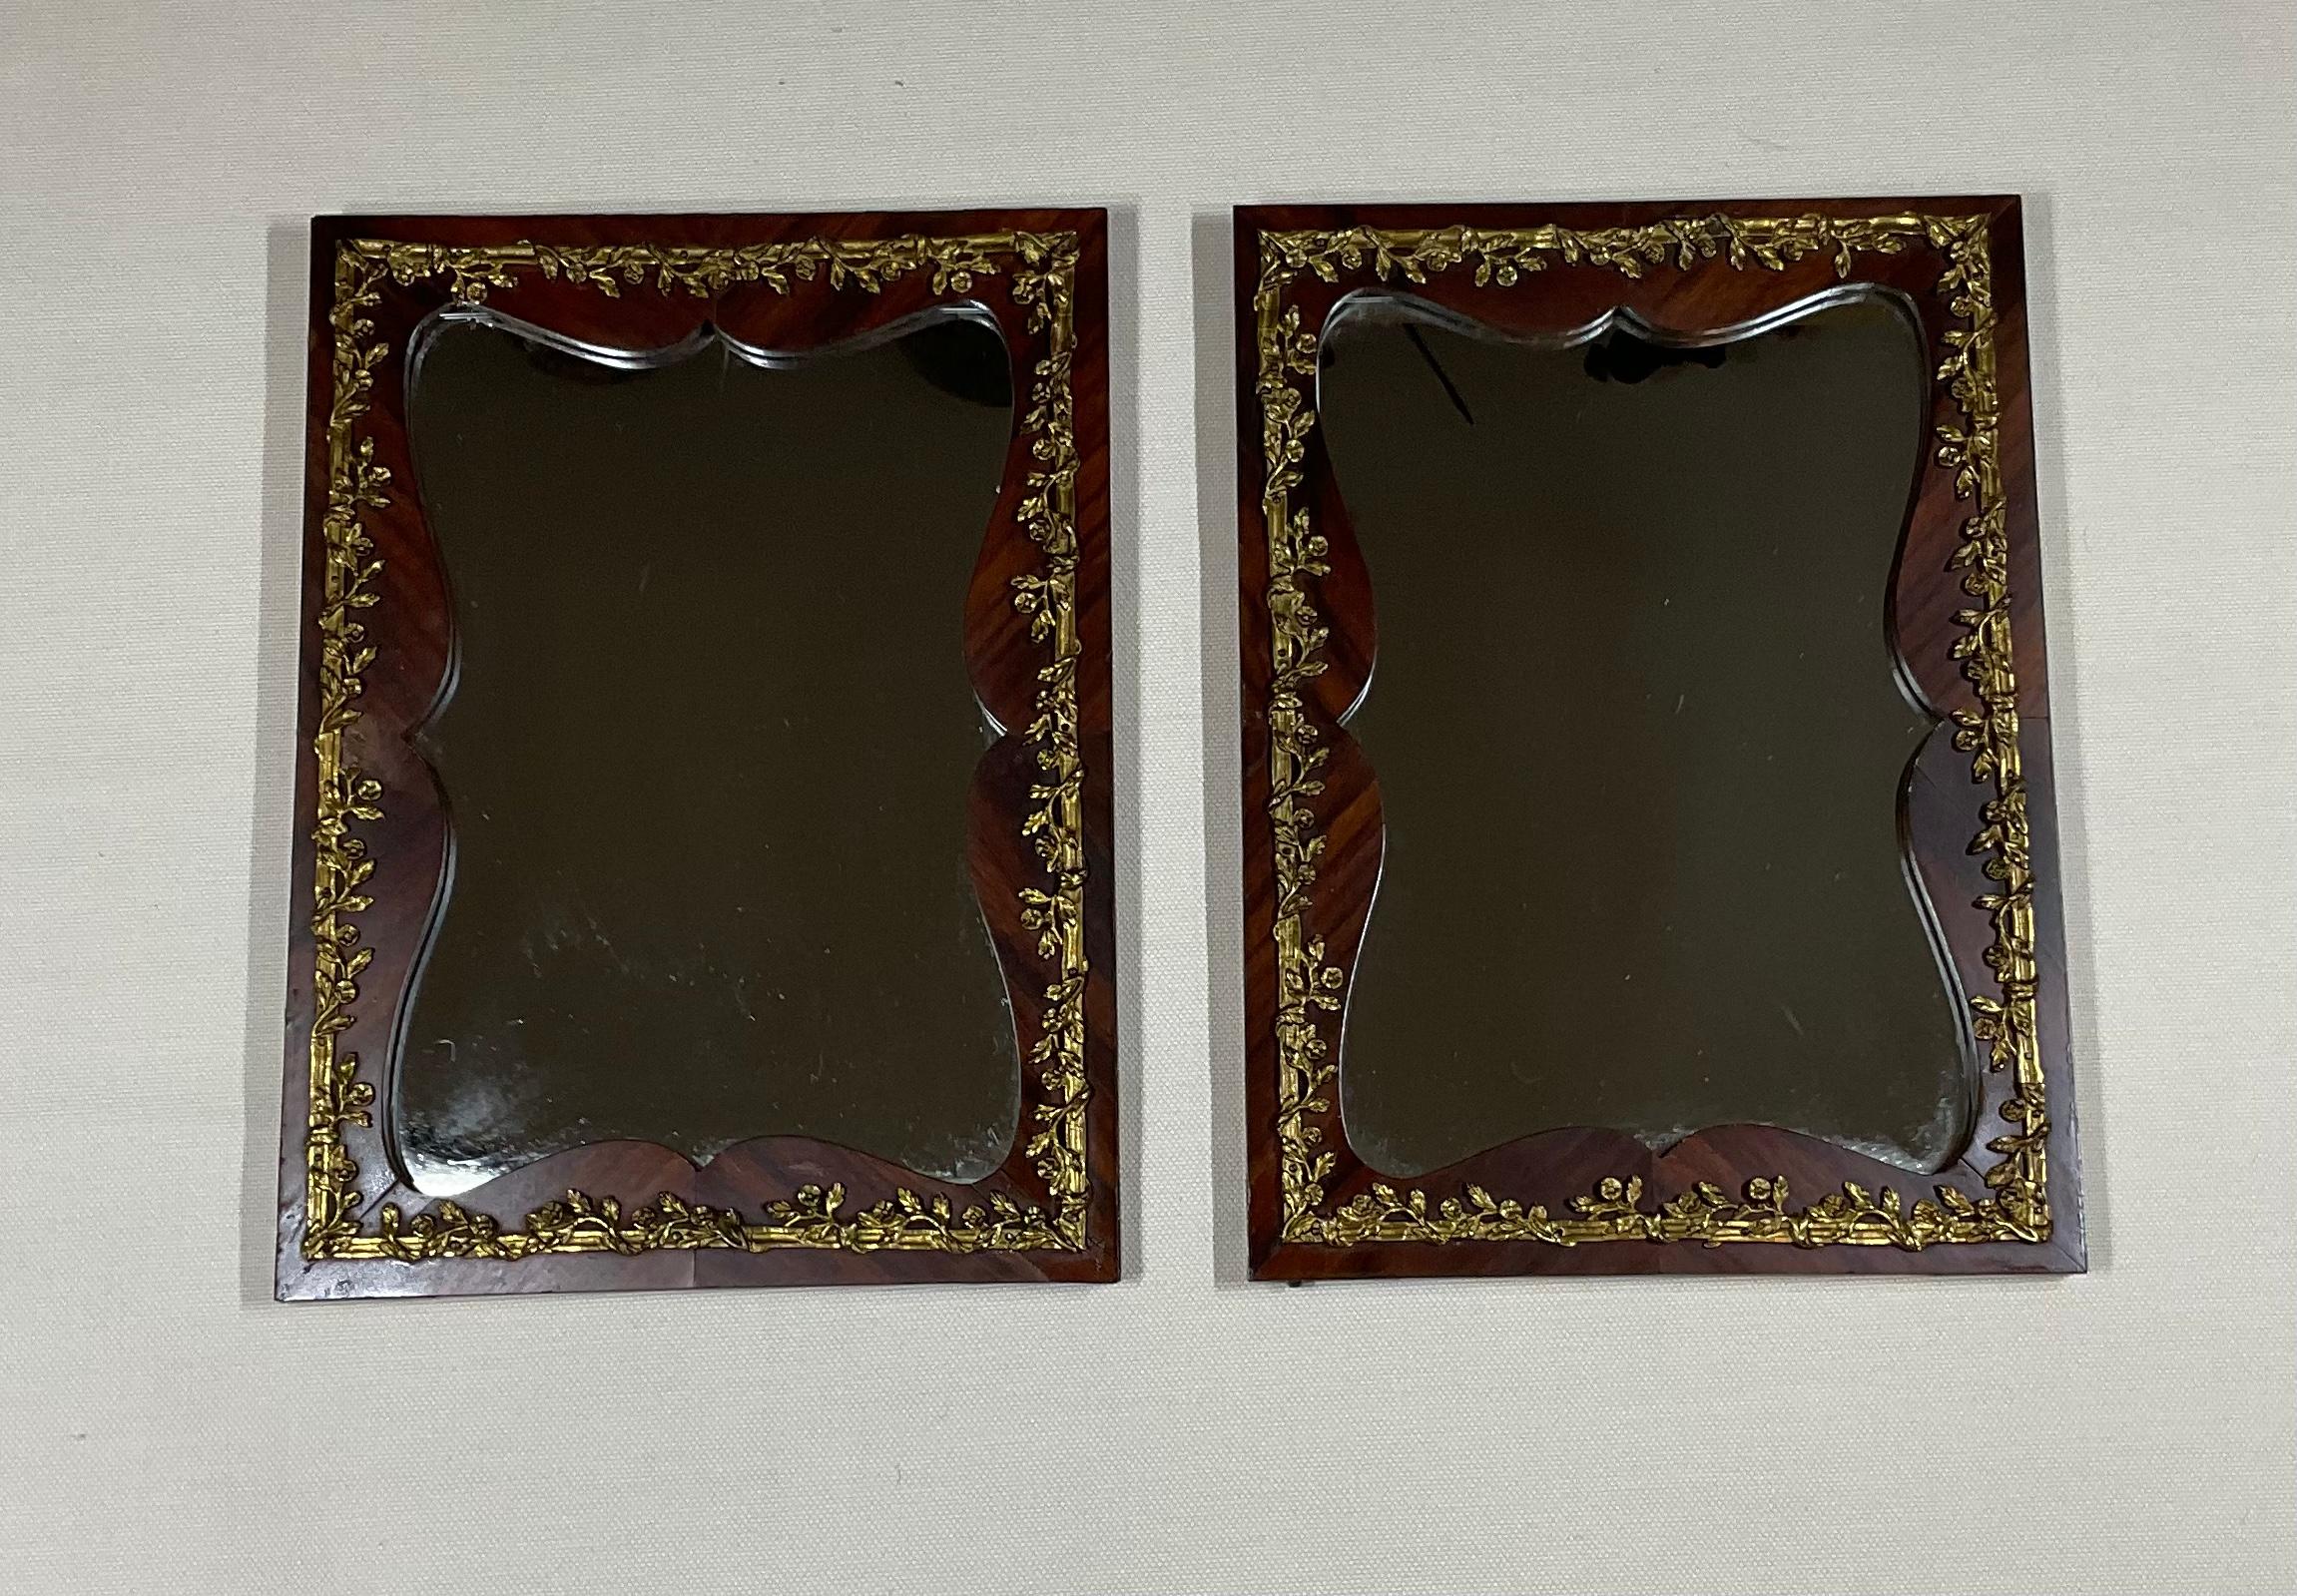 Belle paire de petits miroirs funky en bois massif avec revêtement en placage et garniture exceptionnelle en bronze. Cette paire de miroirs était à l'origine des portes d'une vitrine à bijoux française qui a été récupérée et convertie